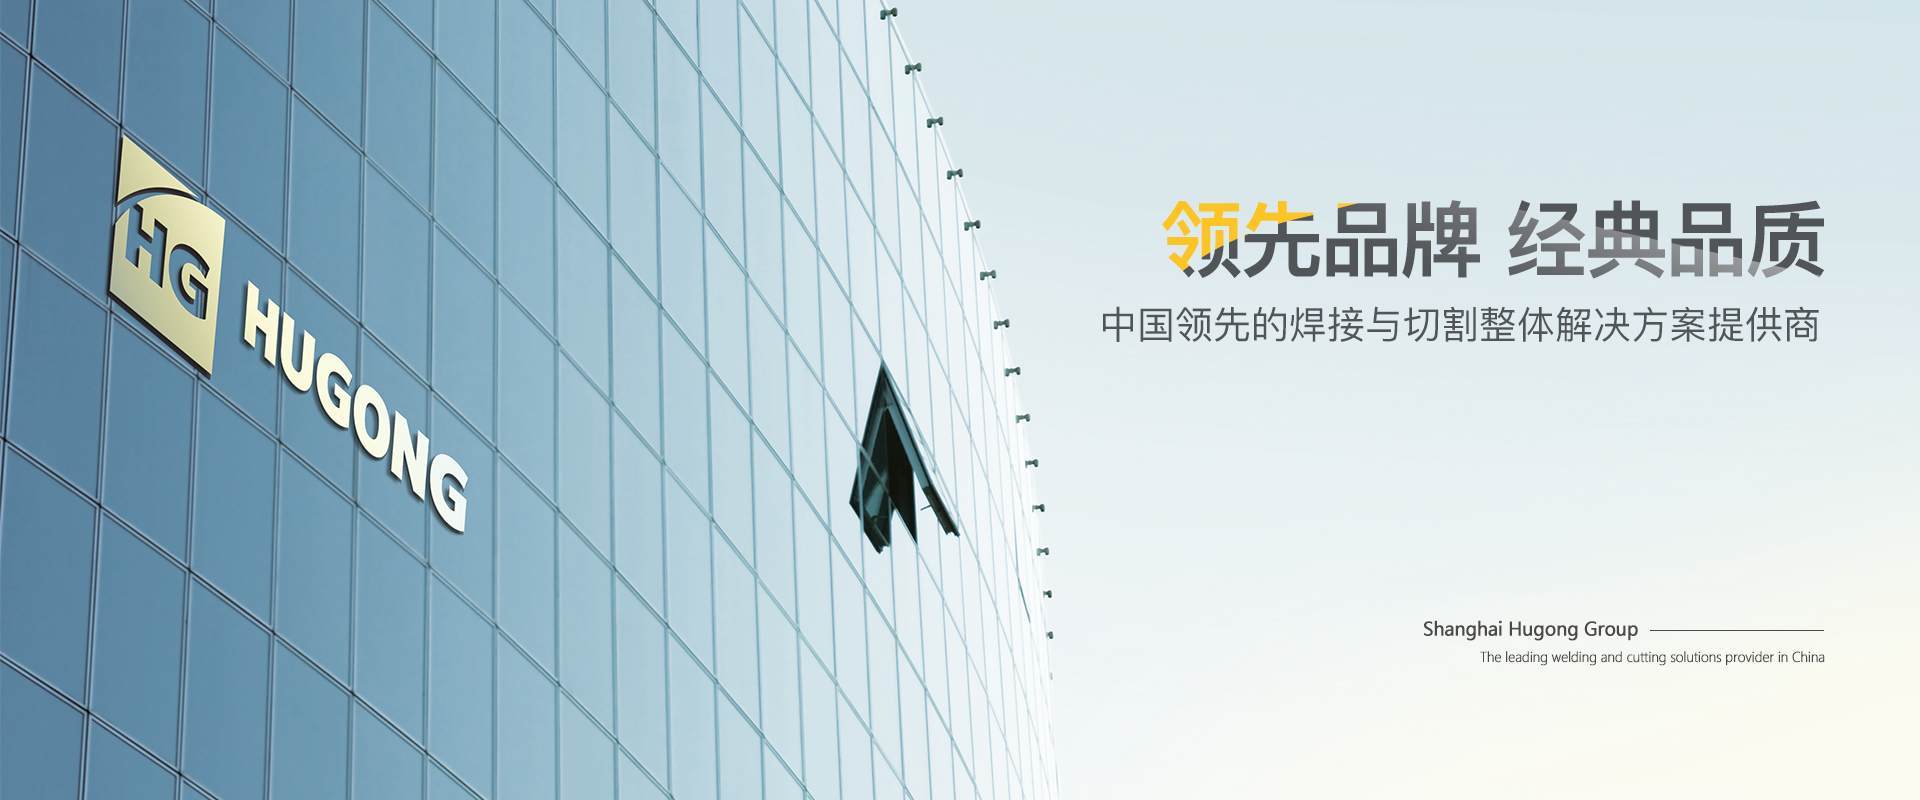 上海suncitygroup太阳集团-中国领先的焊接与切割整体解决计划提供商